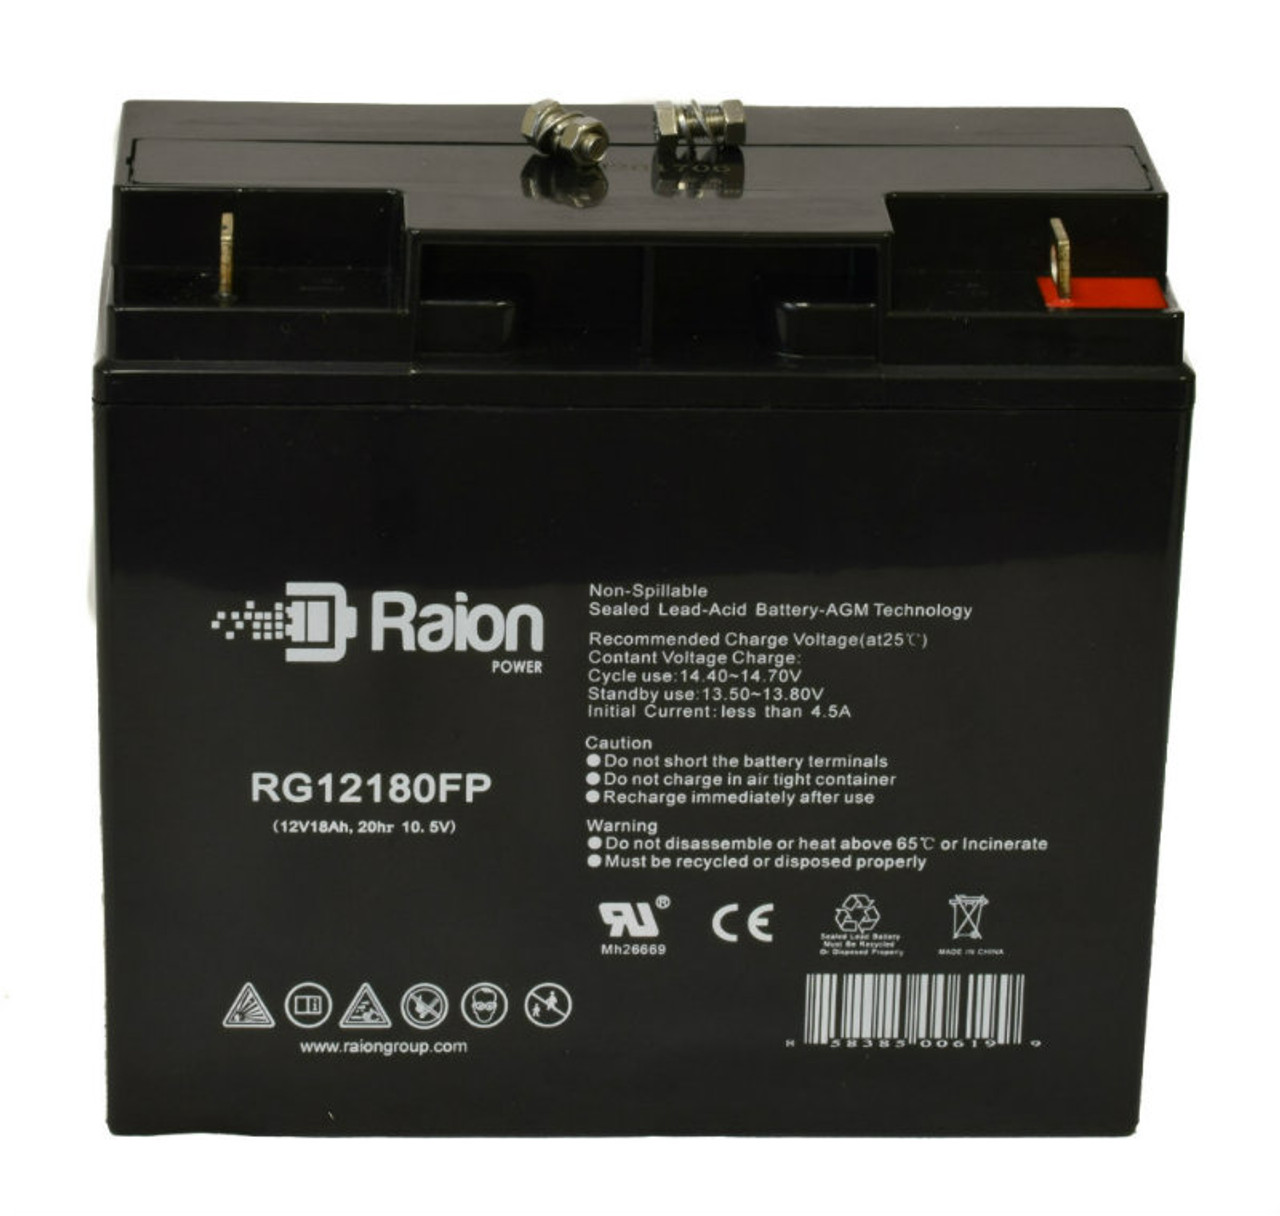 Raion Power RG12180FP 12V 18Ah Lead Acid Battery for National Power GT090S3